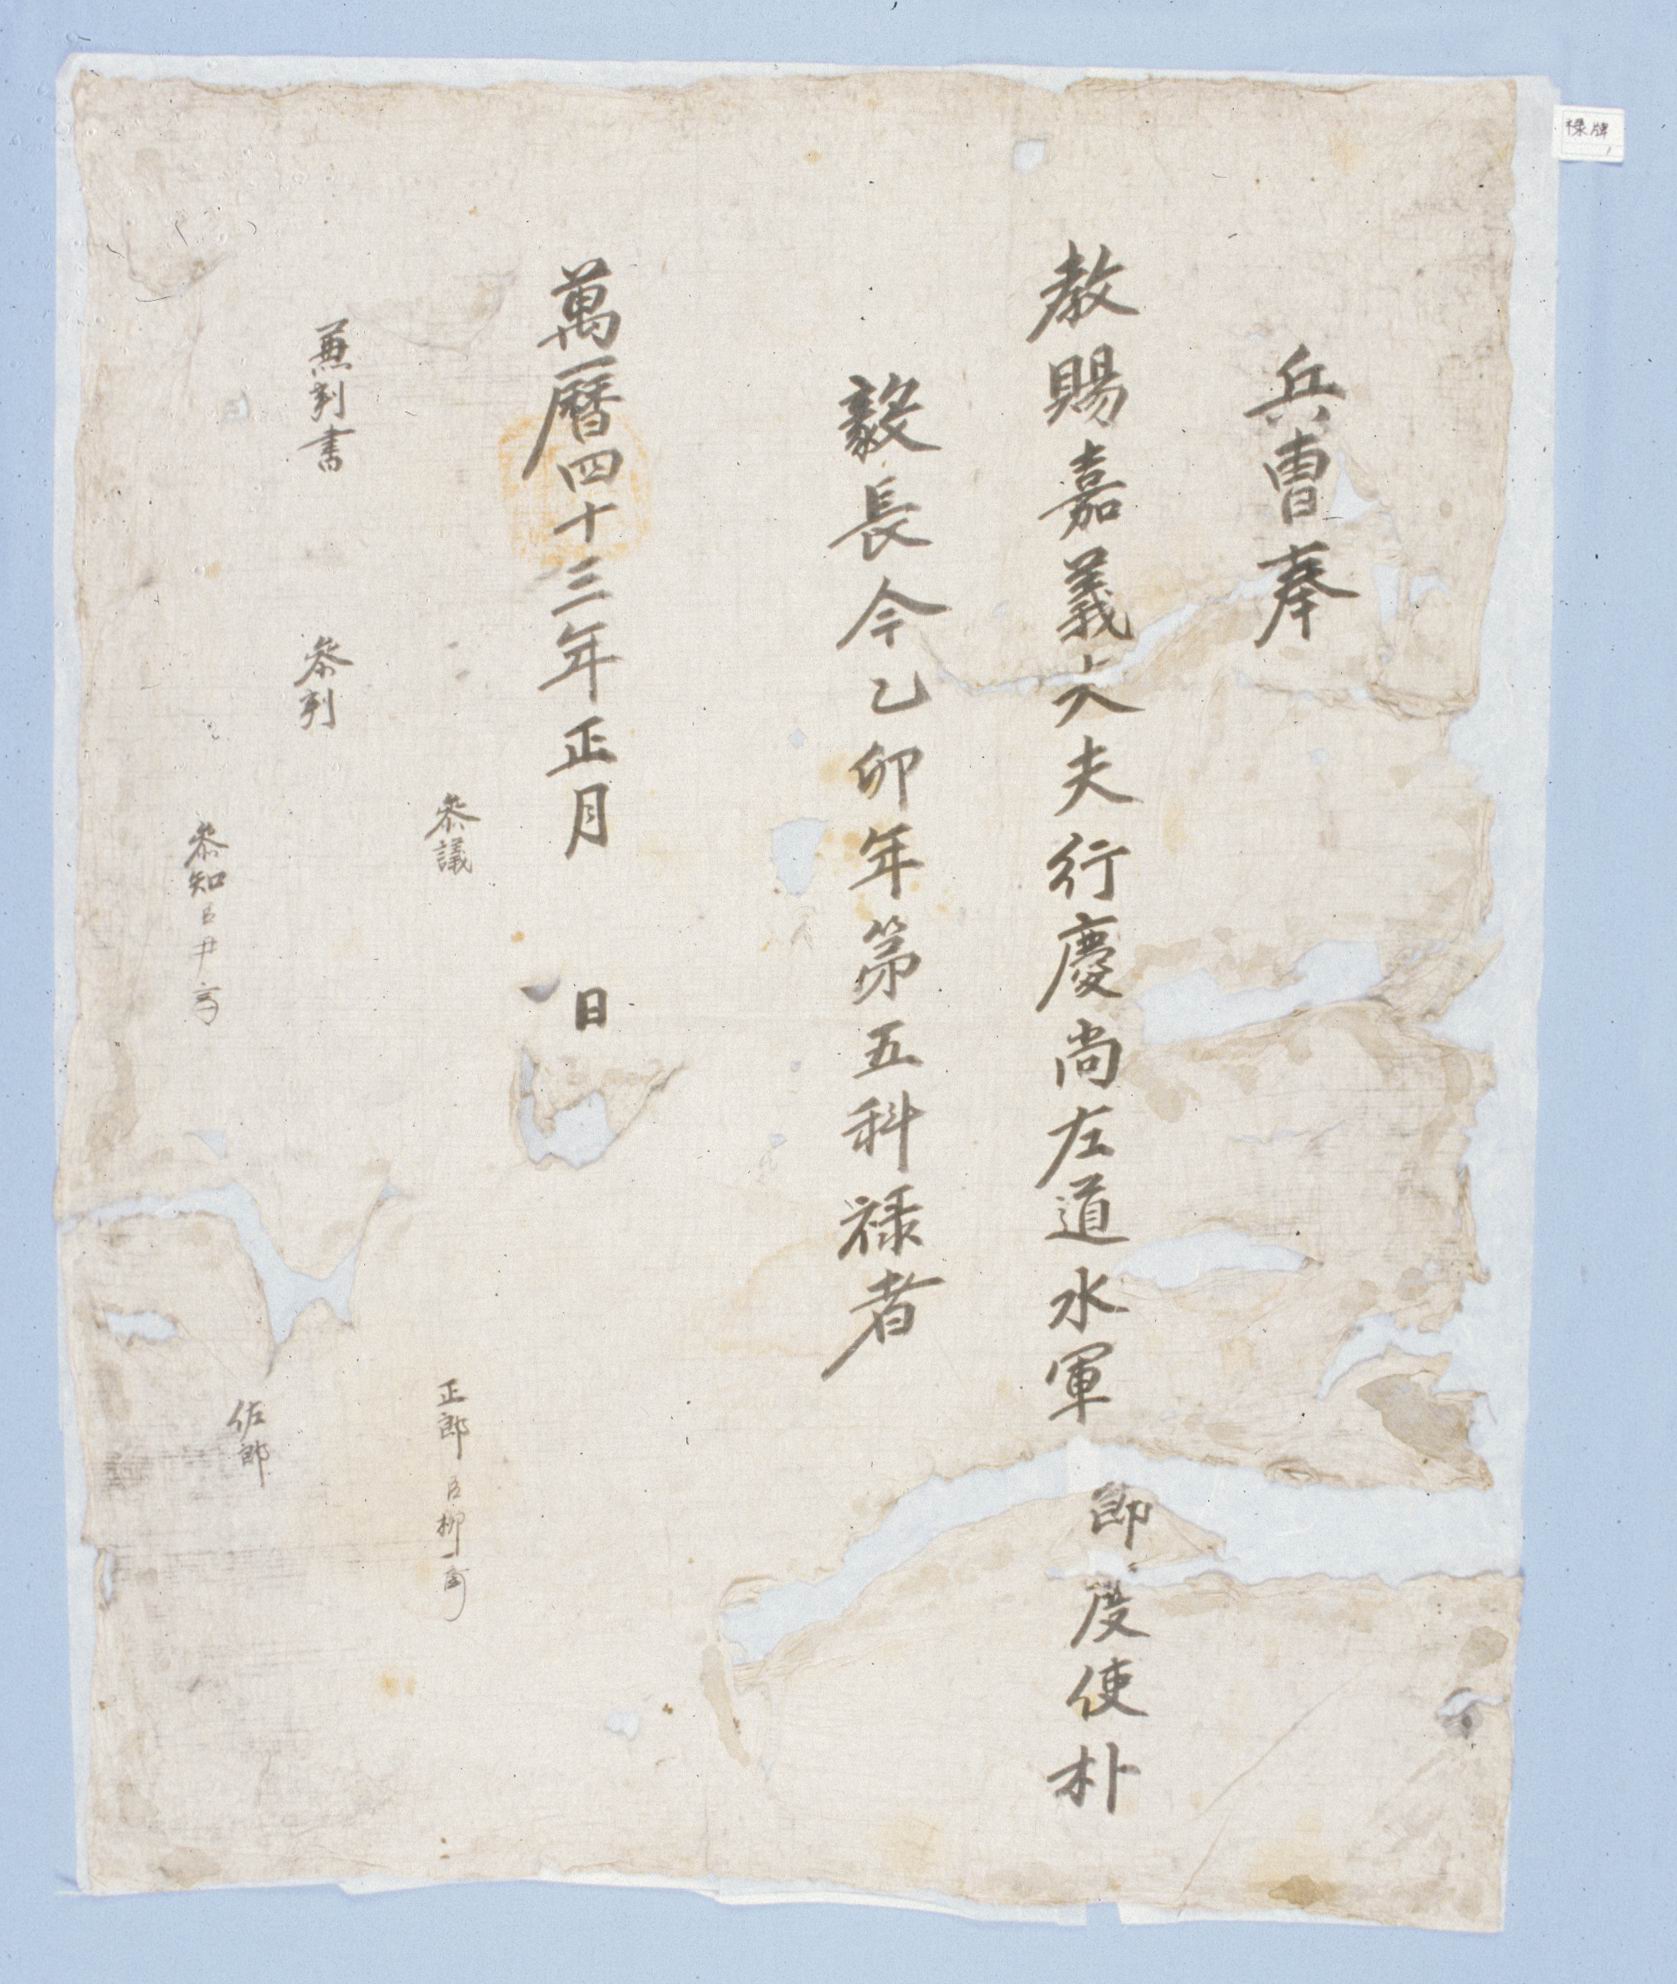 1615년(광해군 7)에 병조에서 박의장에게 발급한 녹패